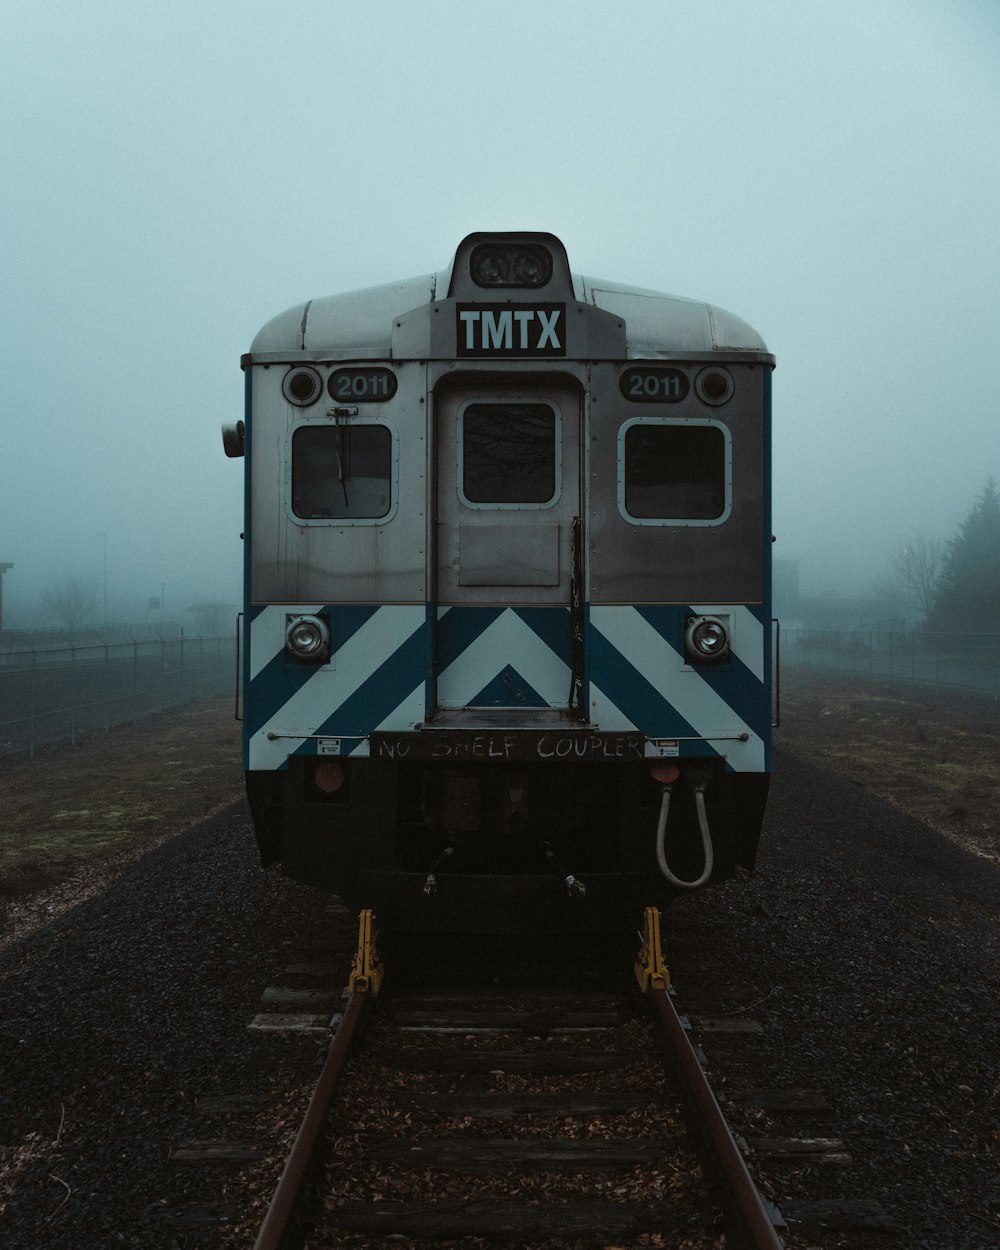 a train on the tracks